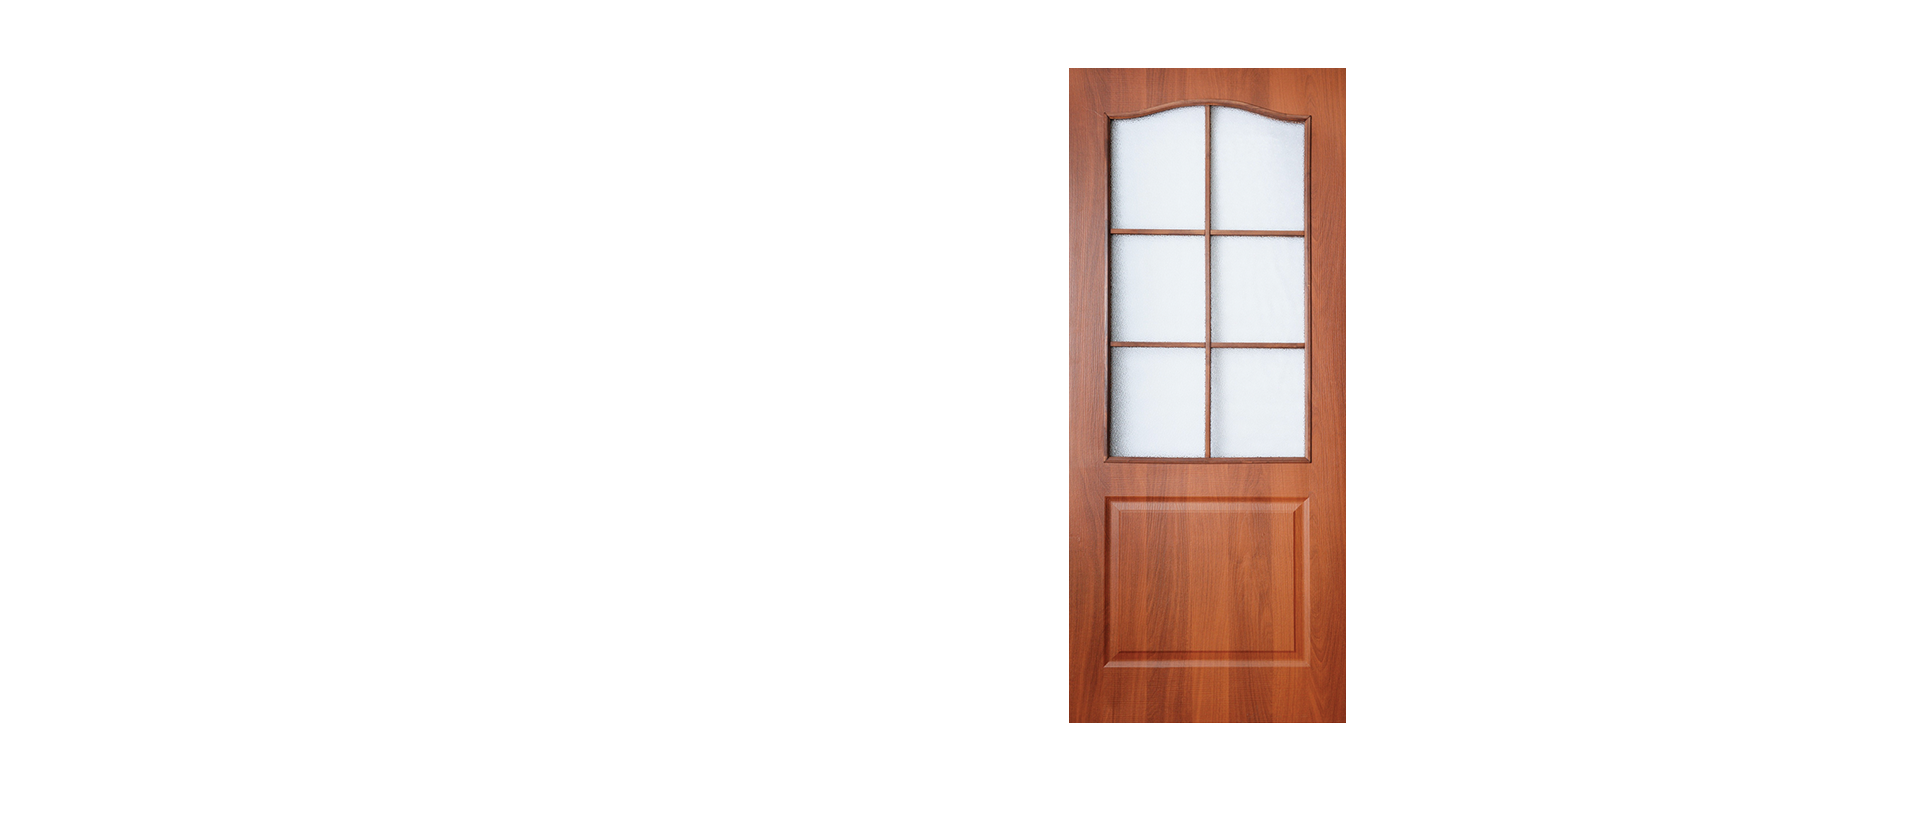 Полотно двери ламинированное глухое со стеклом Терри Classique Итальянский орех 700*2000 мм